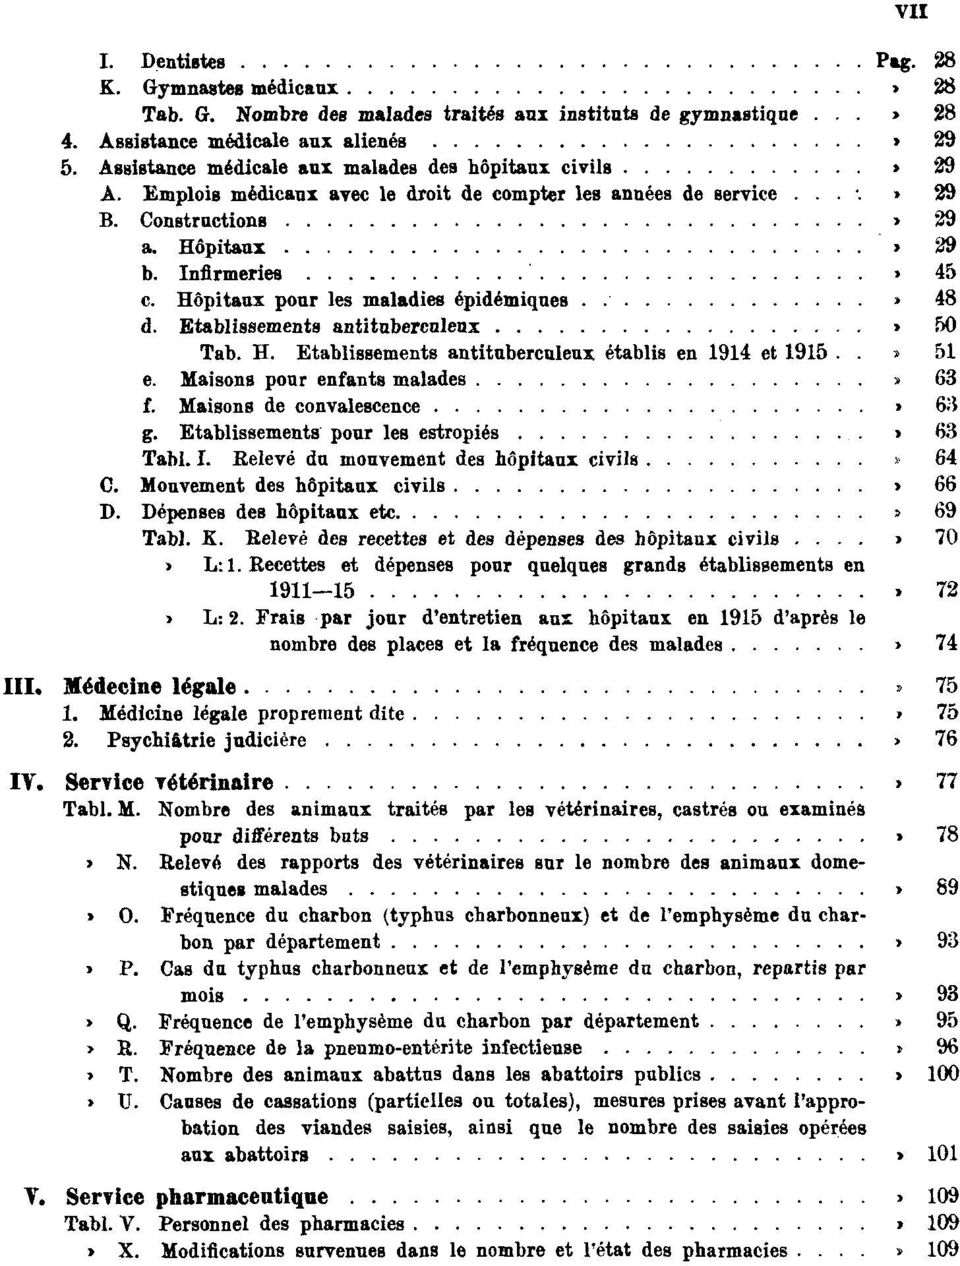 45 c. Hôpitaux pour les maladies épidémiques. Pag. 48 d. Etablissements antituberculeux Pag. 50 Tab. H. Etablissements antituberculeux établis en 1914 et 1915 Pag. 51 e.